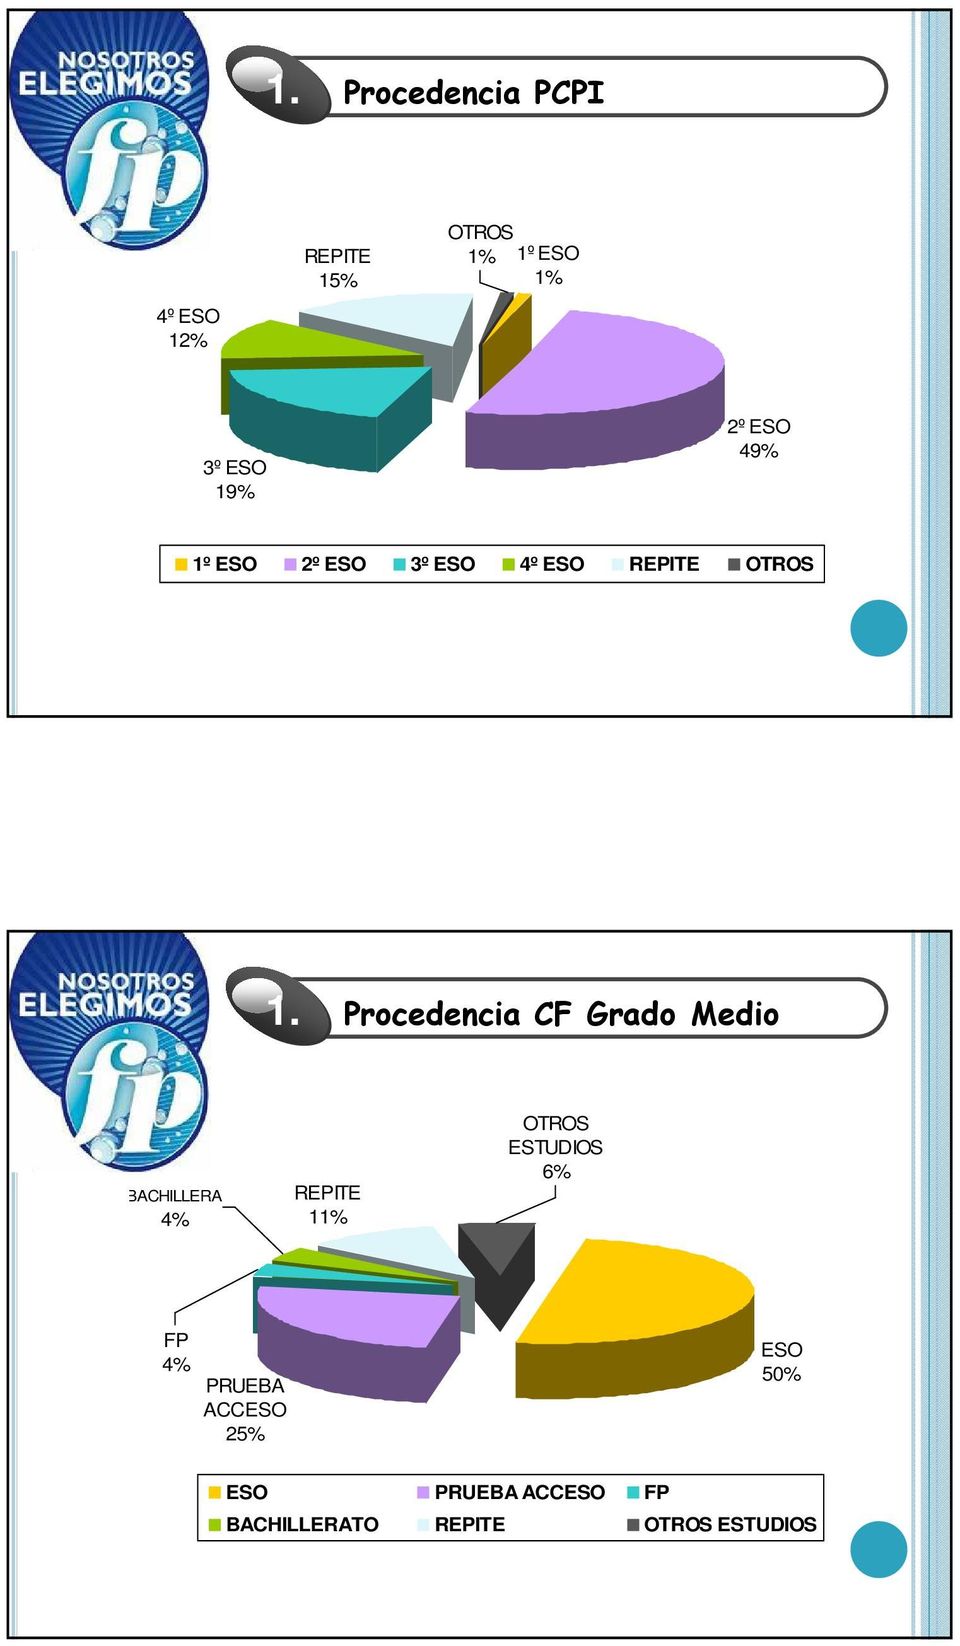 Procedencia CF Grado Medio BACHILLERA 4% REPITE 11% OTROS ESTUDIOS 6%